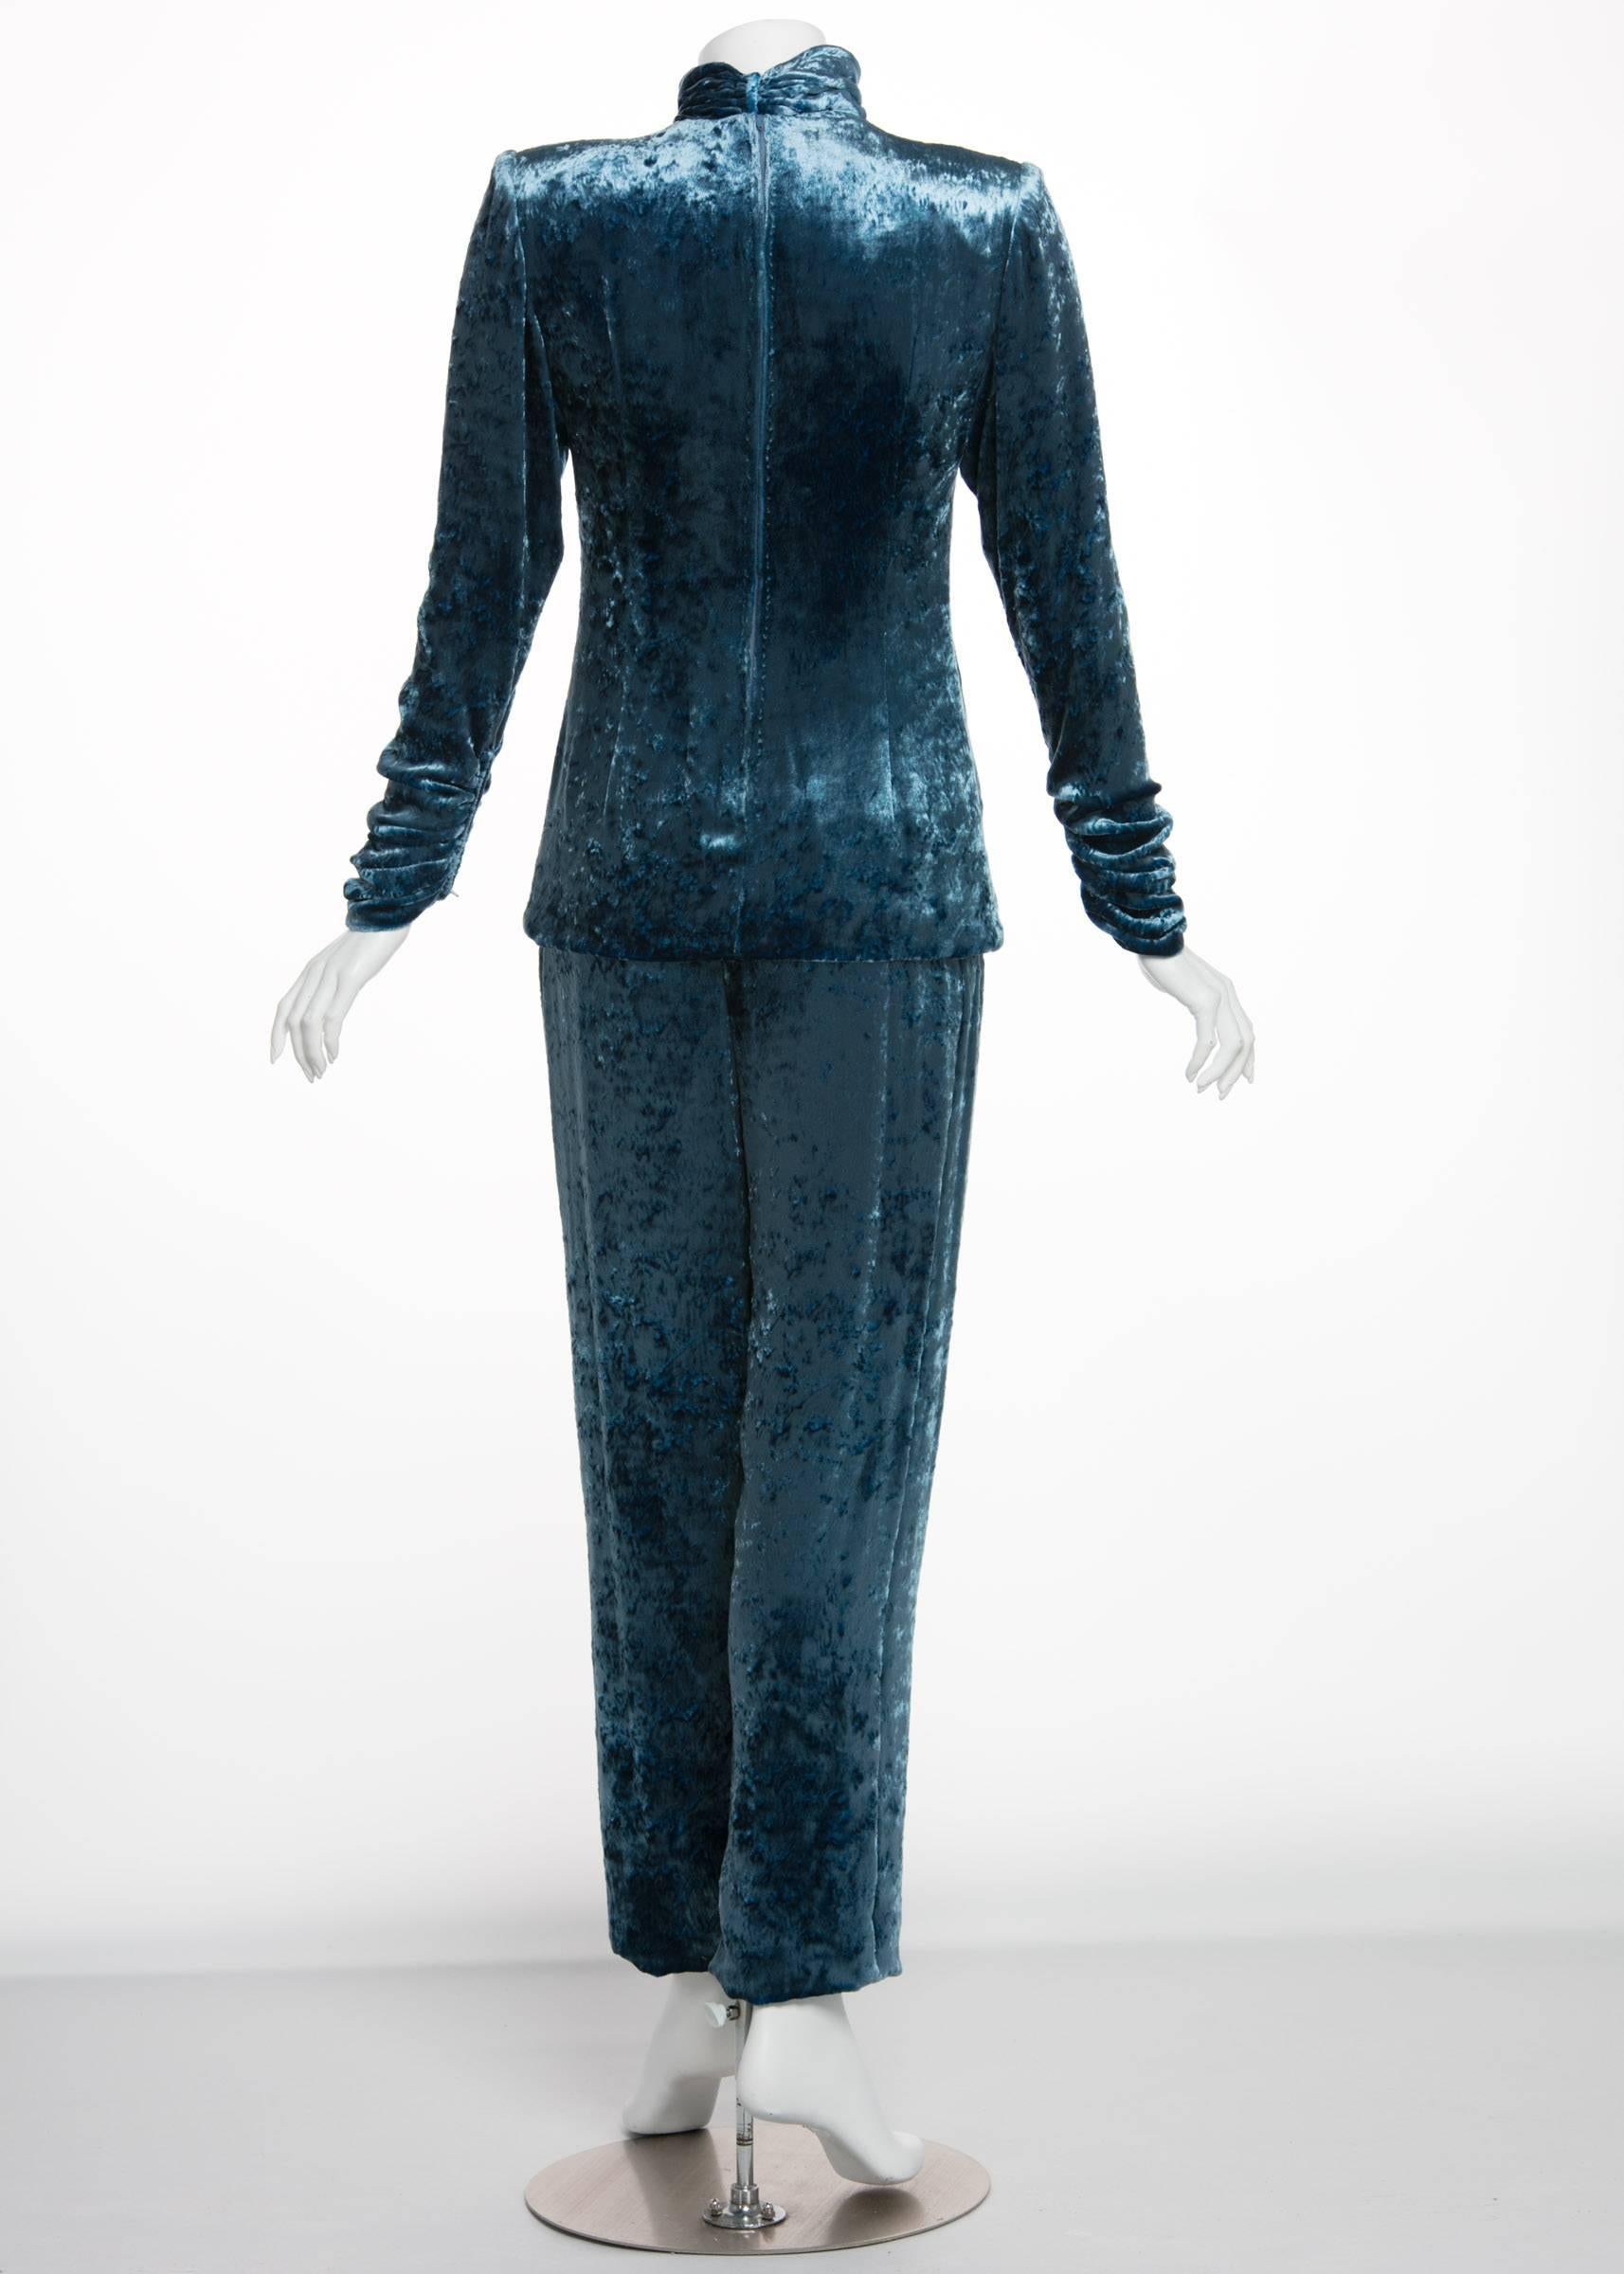 Women's Galanos Couture Blue Velvet Evening Tunic Top Pants Suit, 1980s 